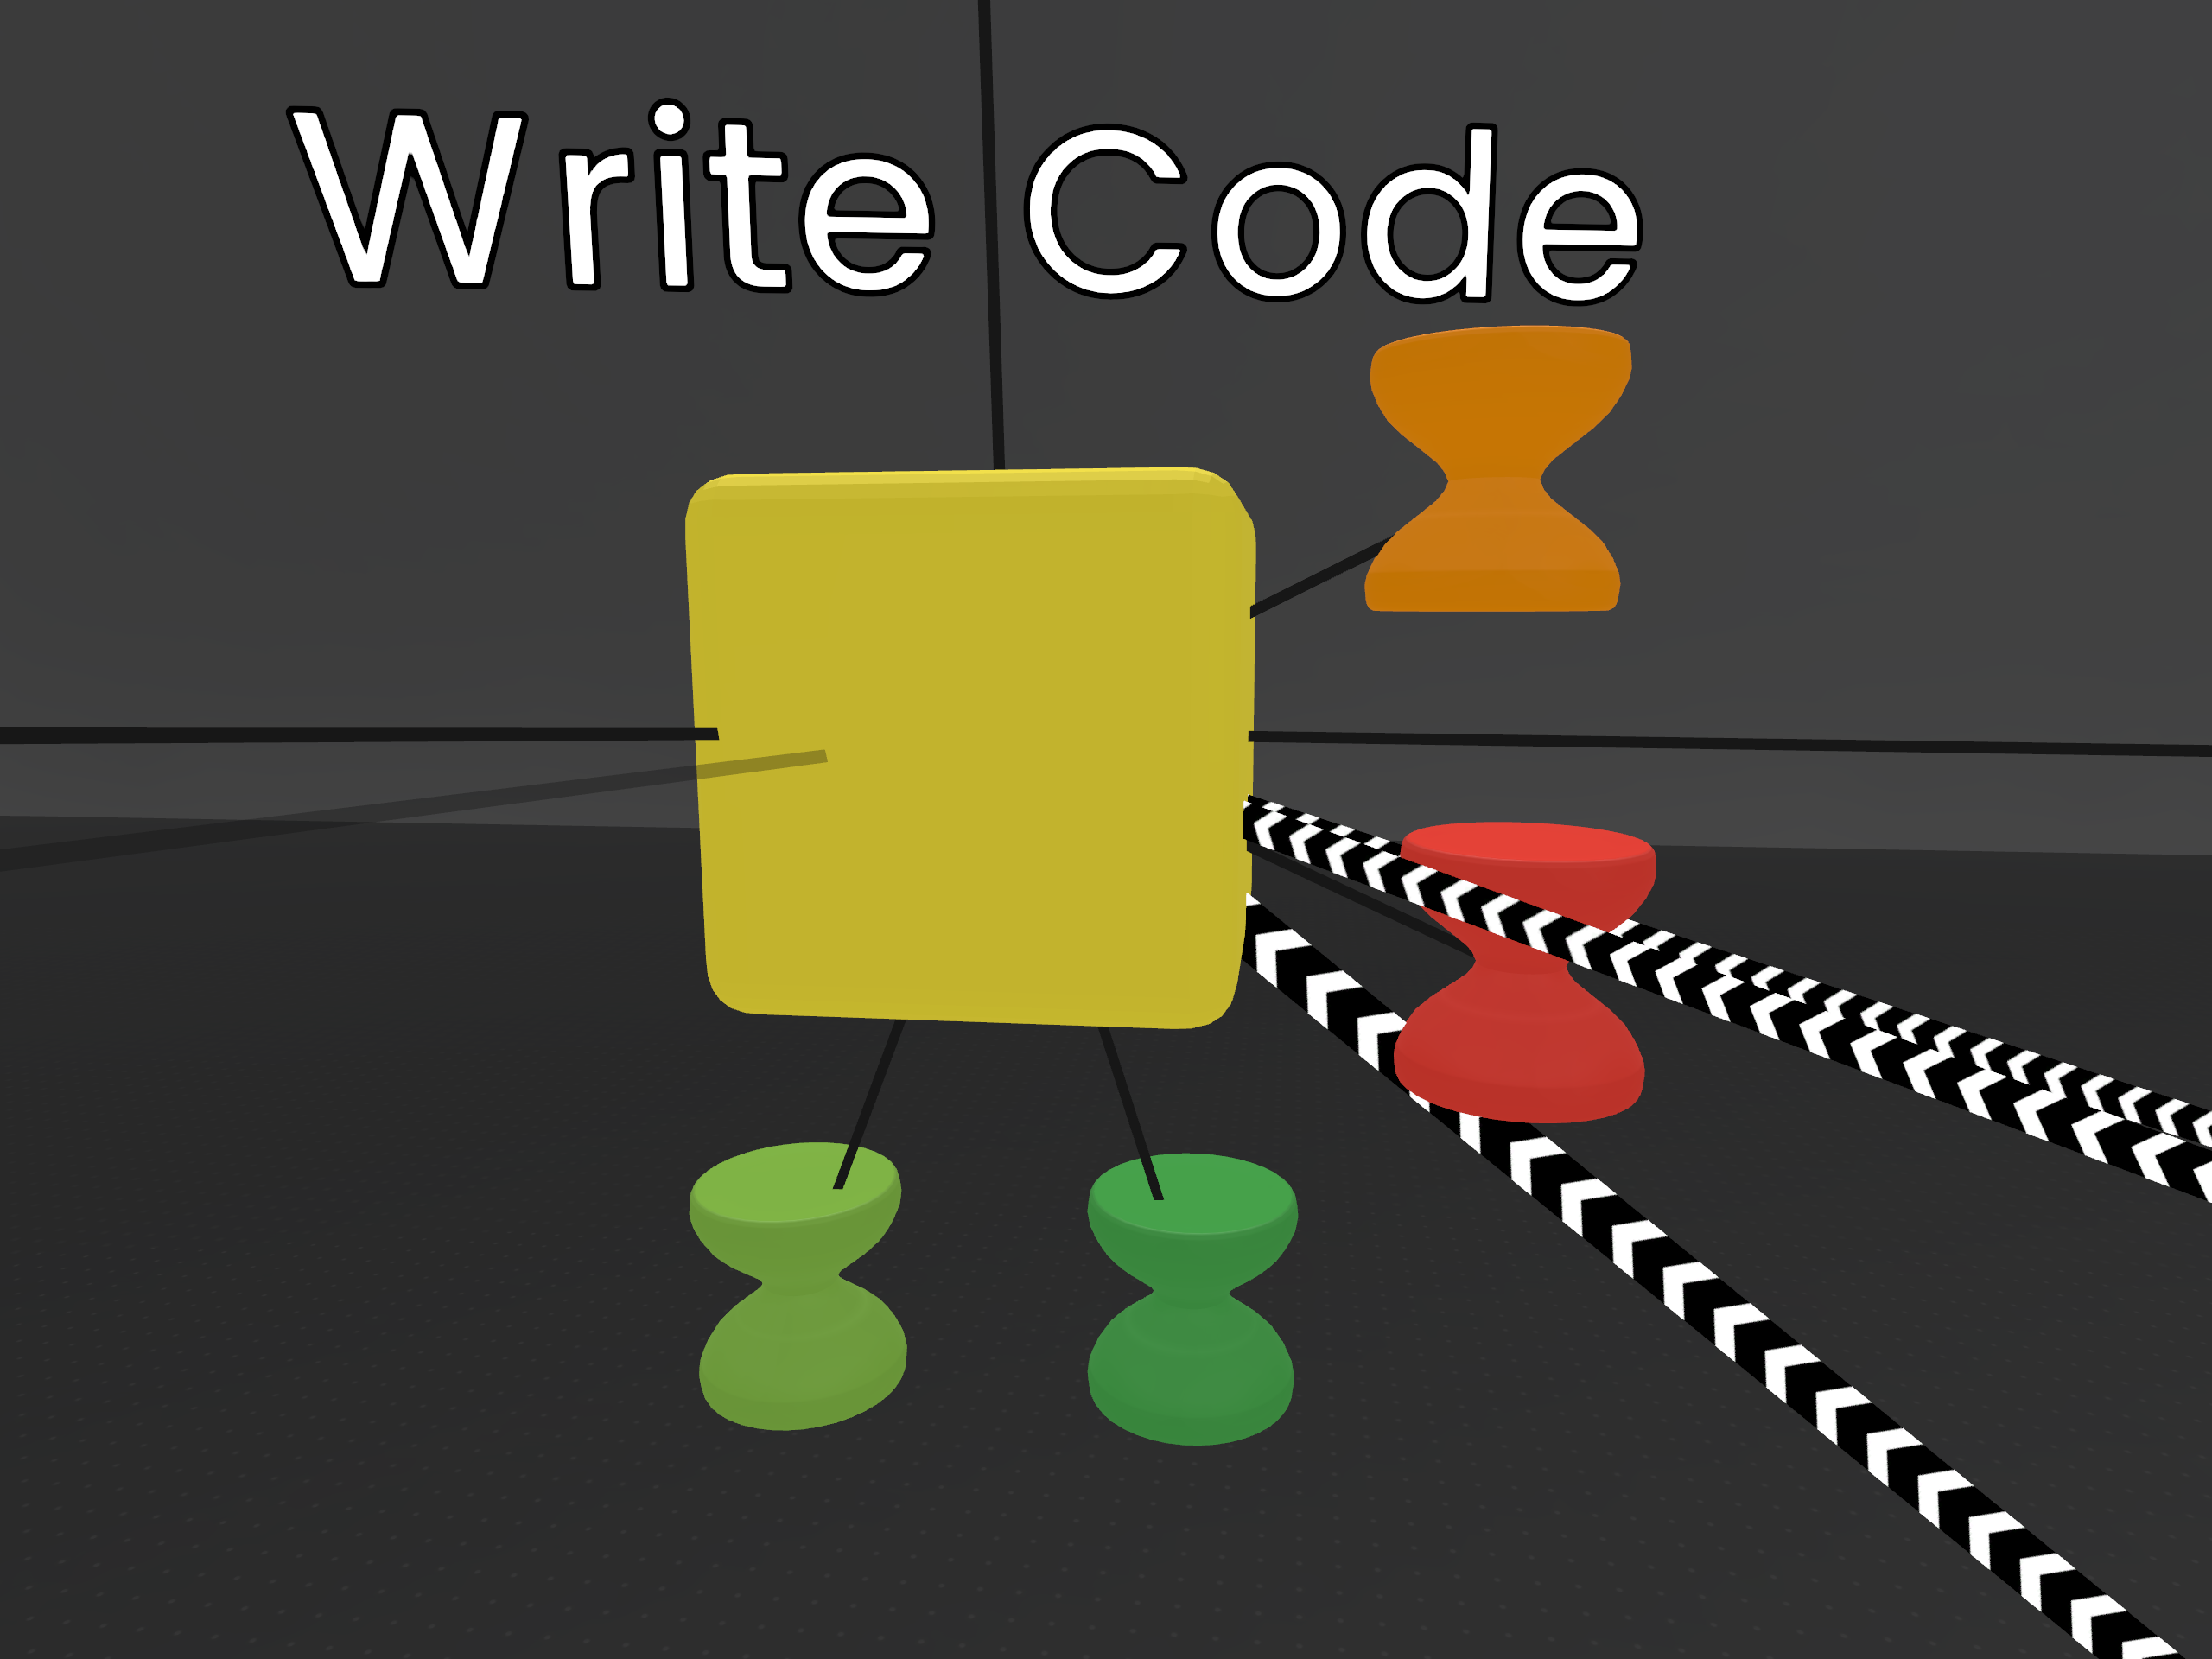 The Write Code Node